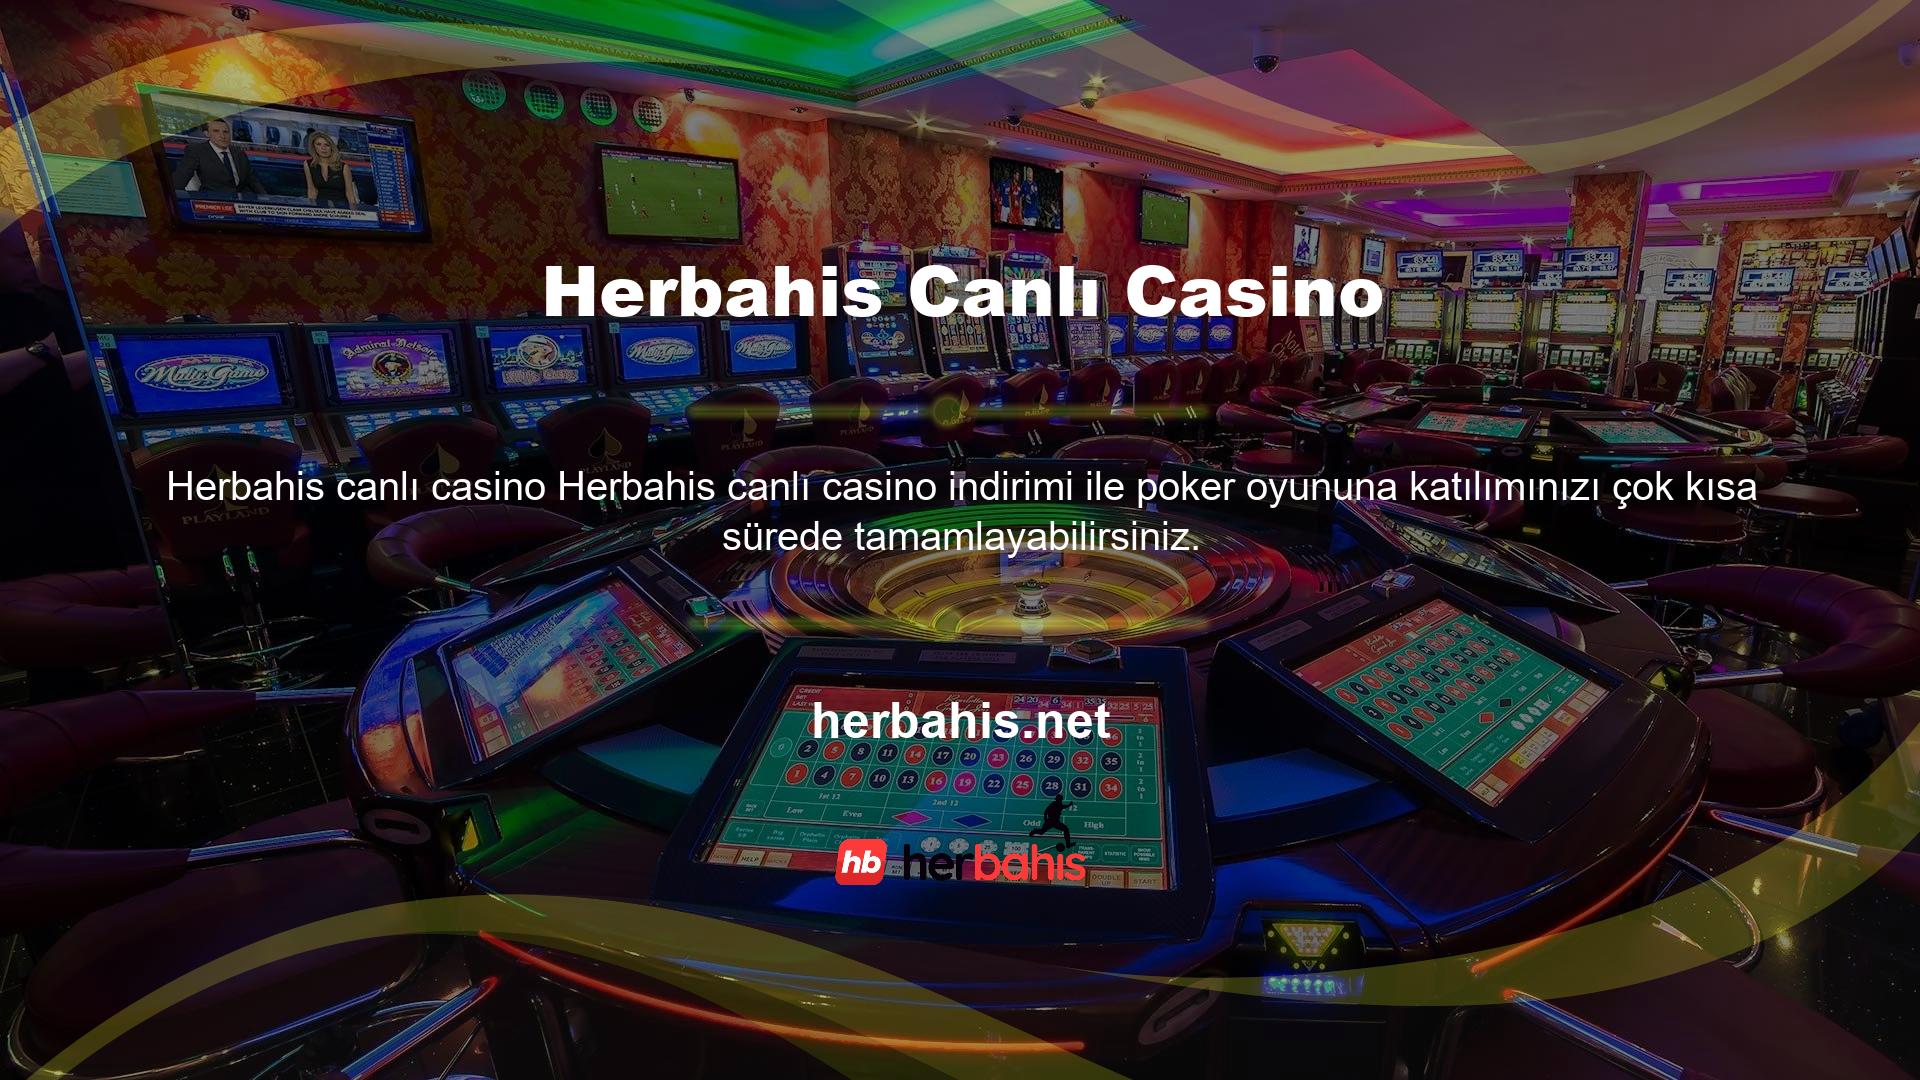 Herbahis canlı casino poker oyunlarının kuralları oldukça açıktır